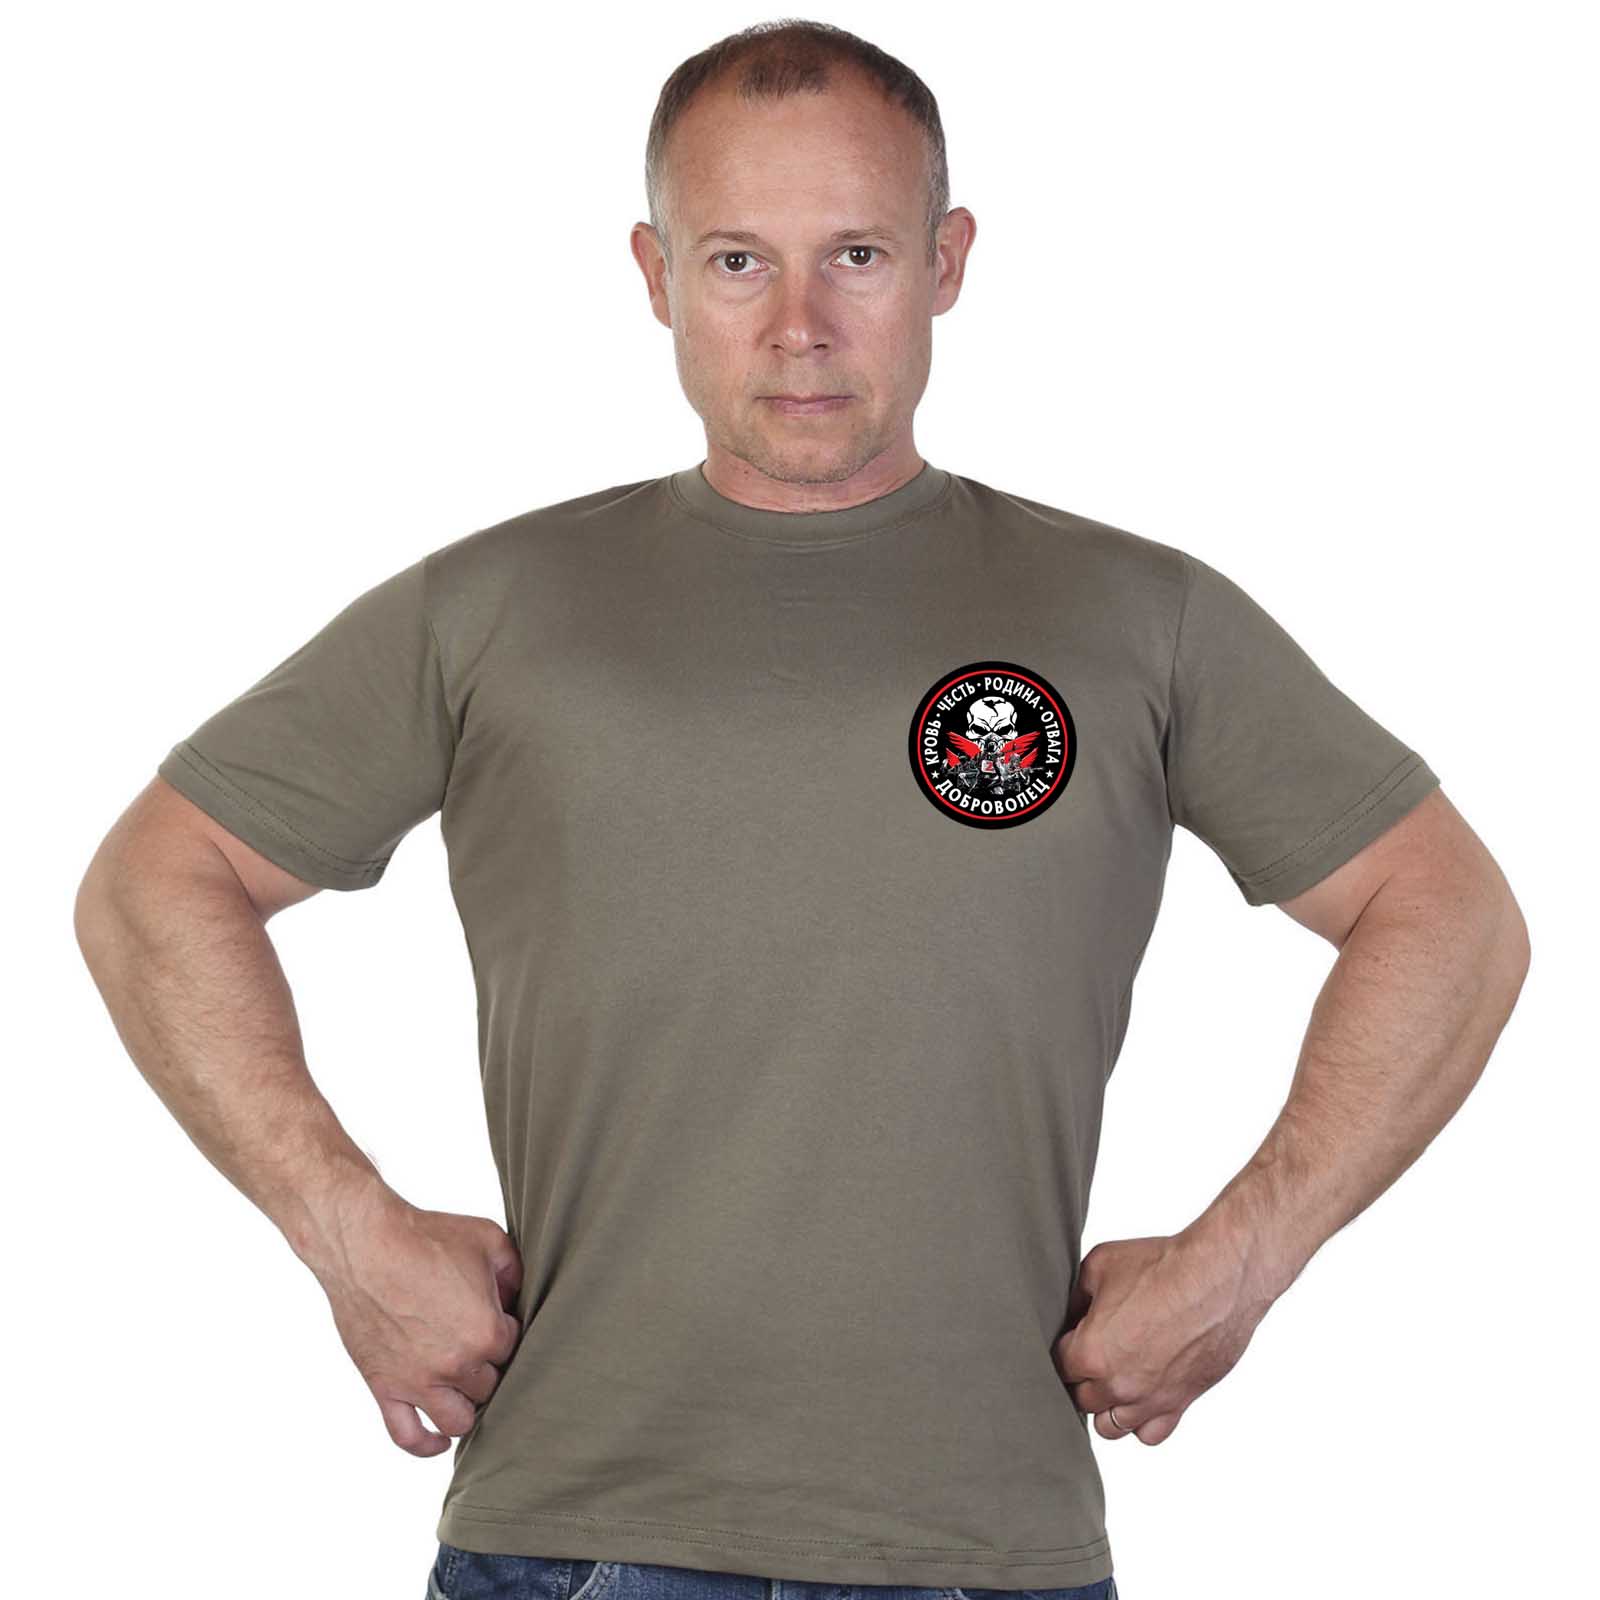 Купить трикотажную оливковую футболку с термоаппликацией Доброволец Z с доставкой